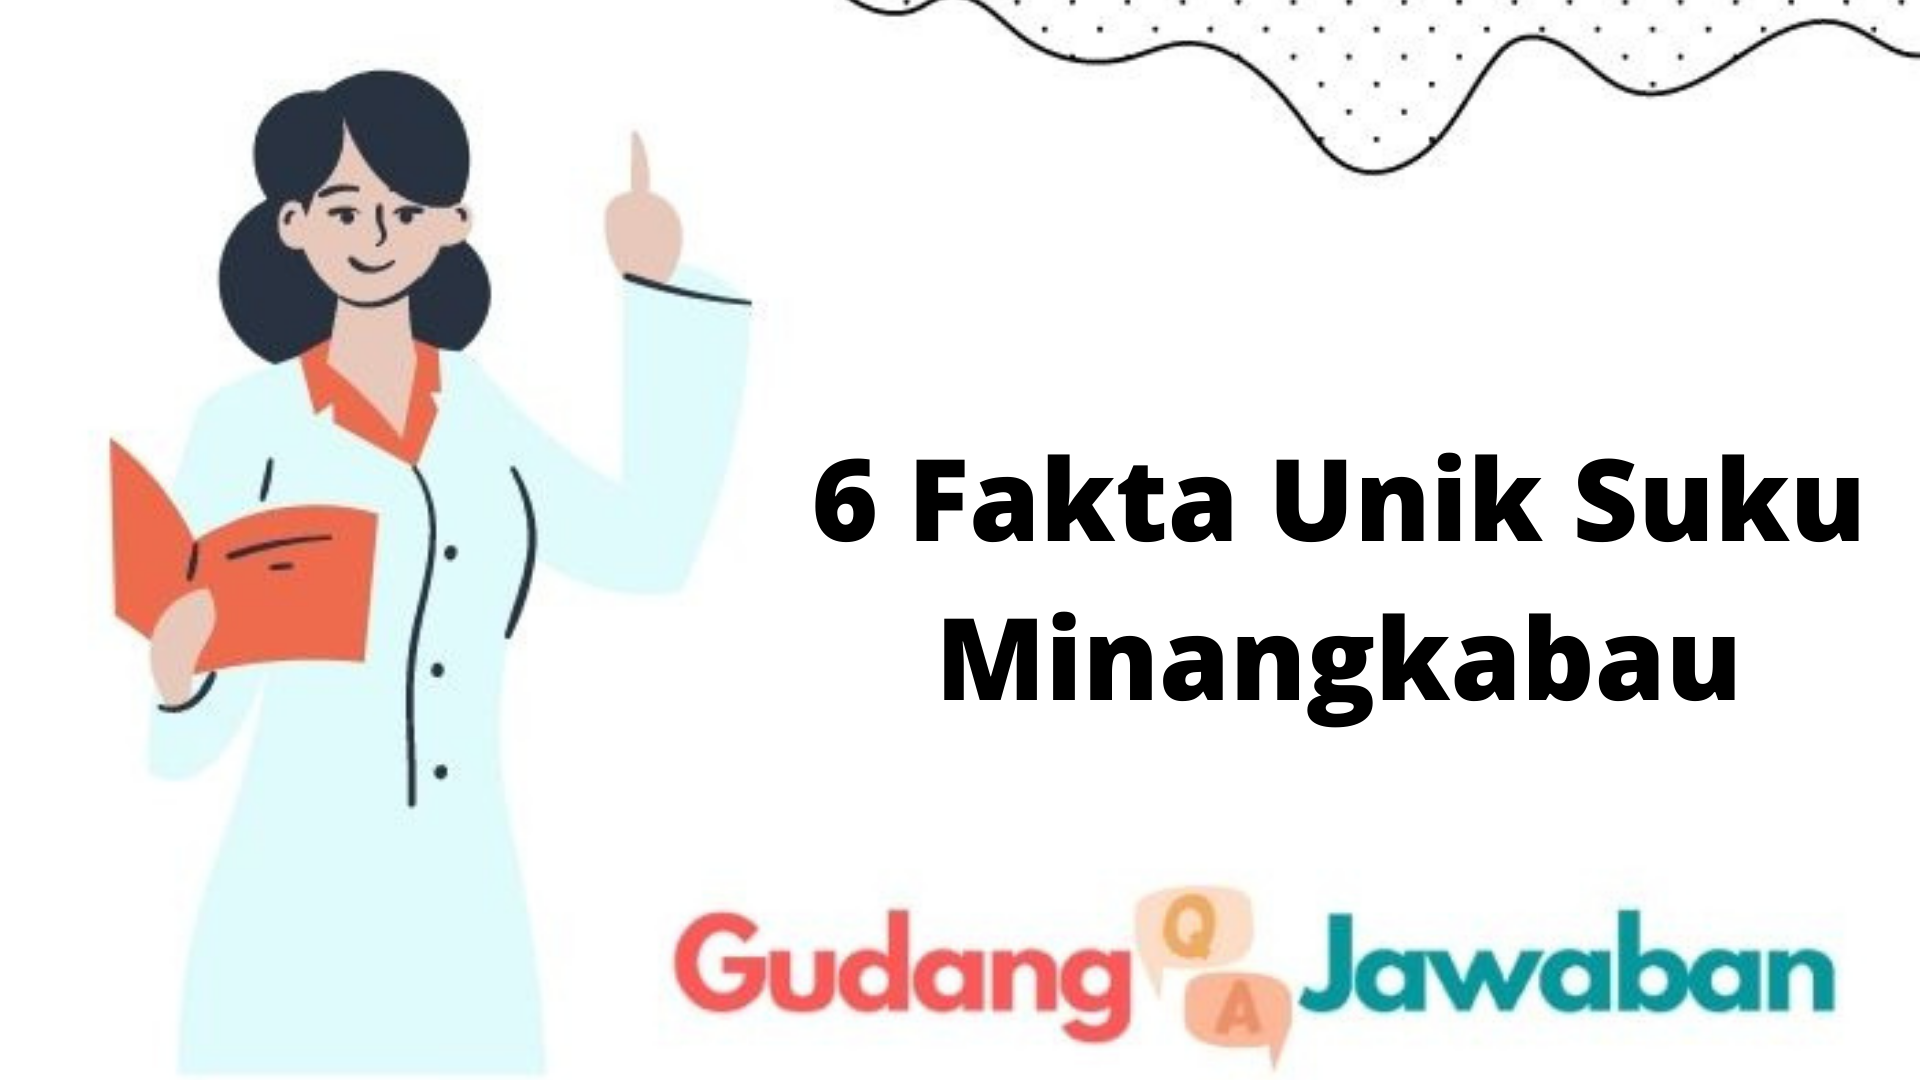 6 Fakta Unik Suku Minangkabau